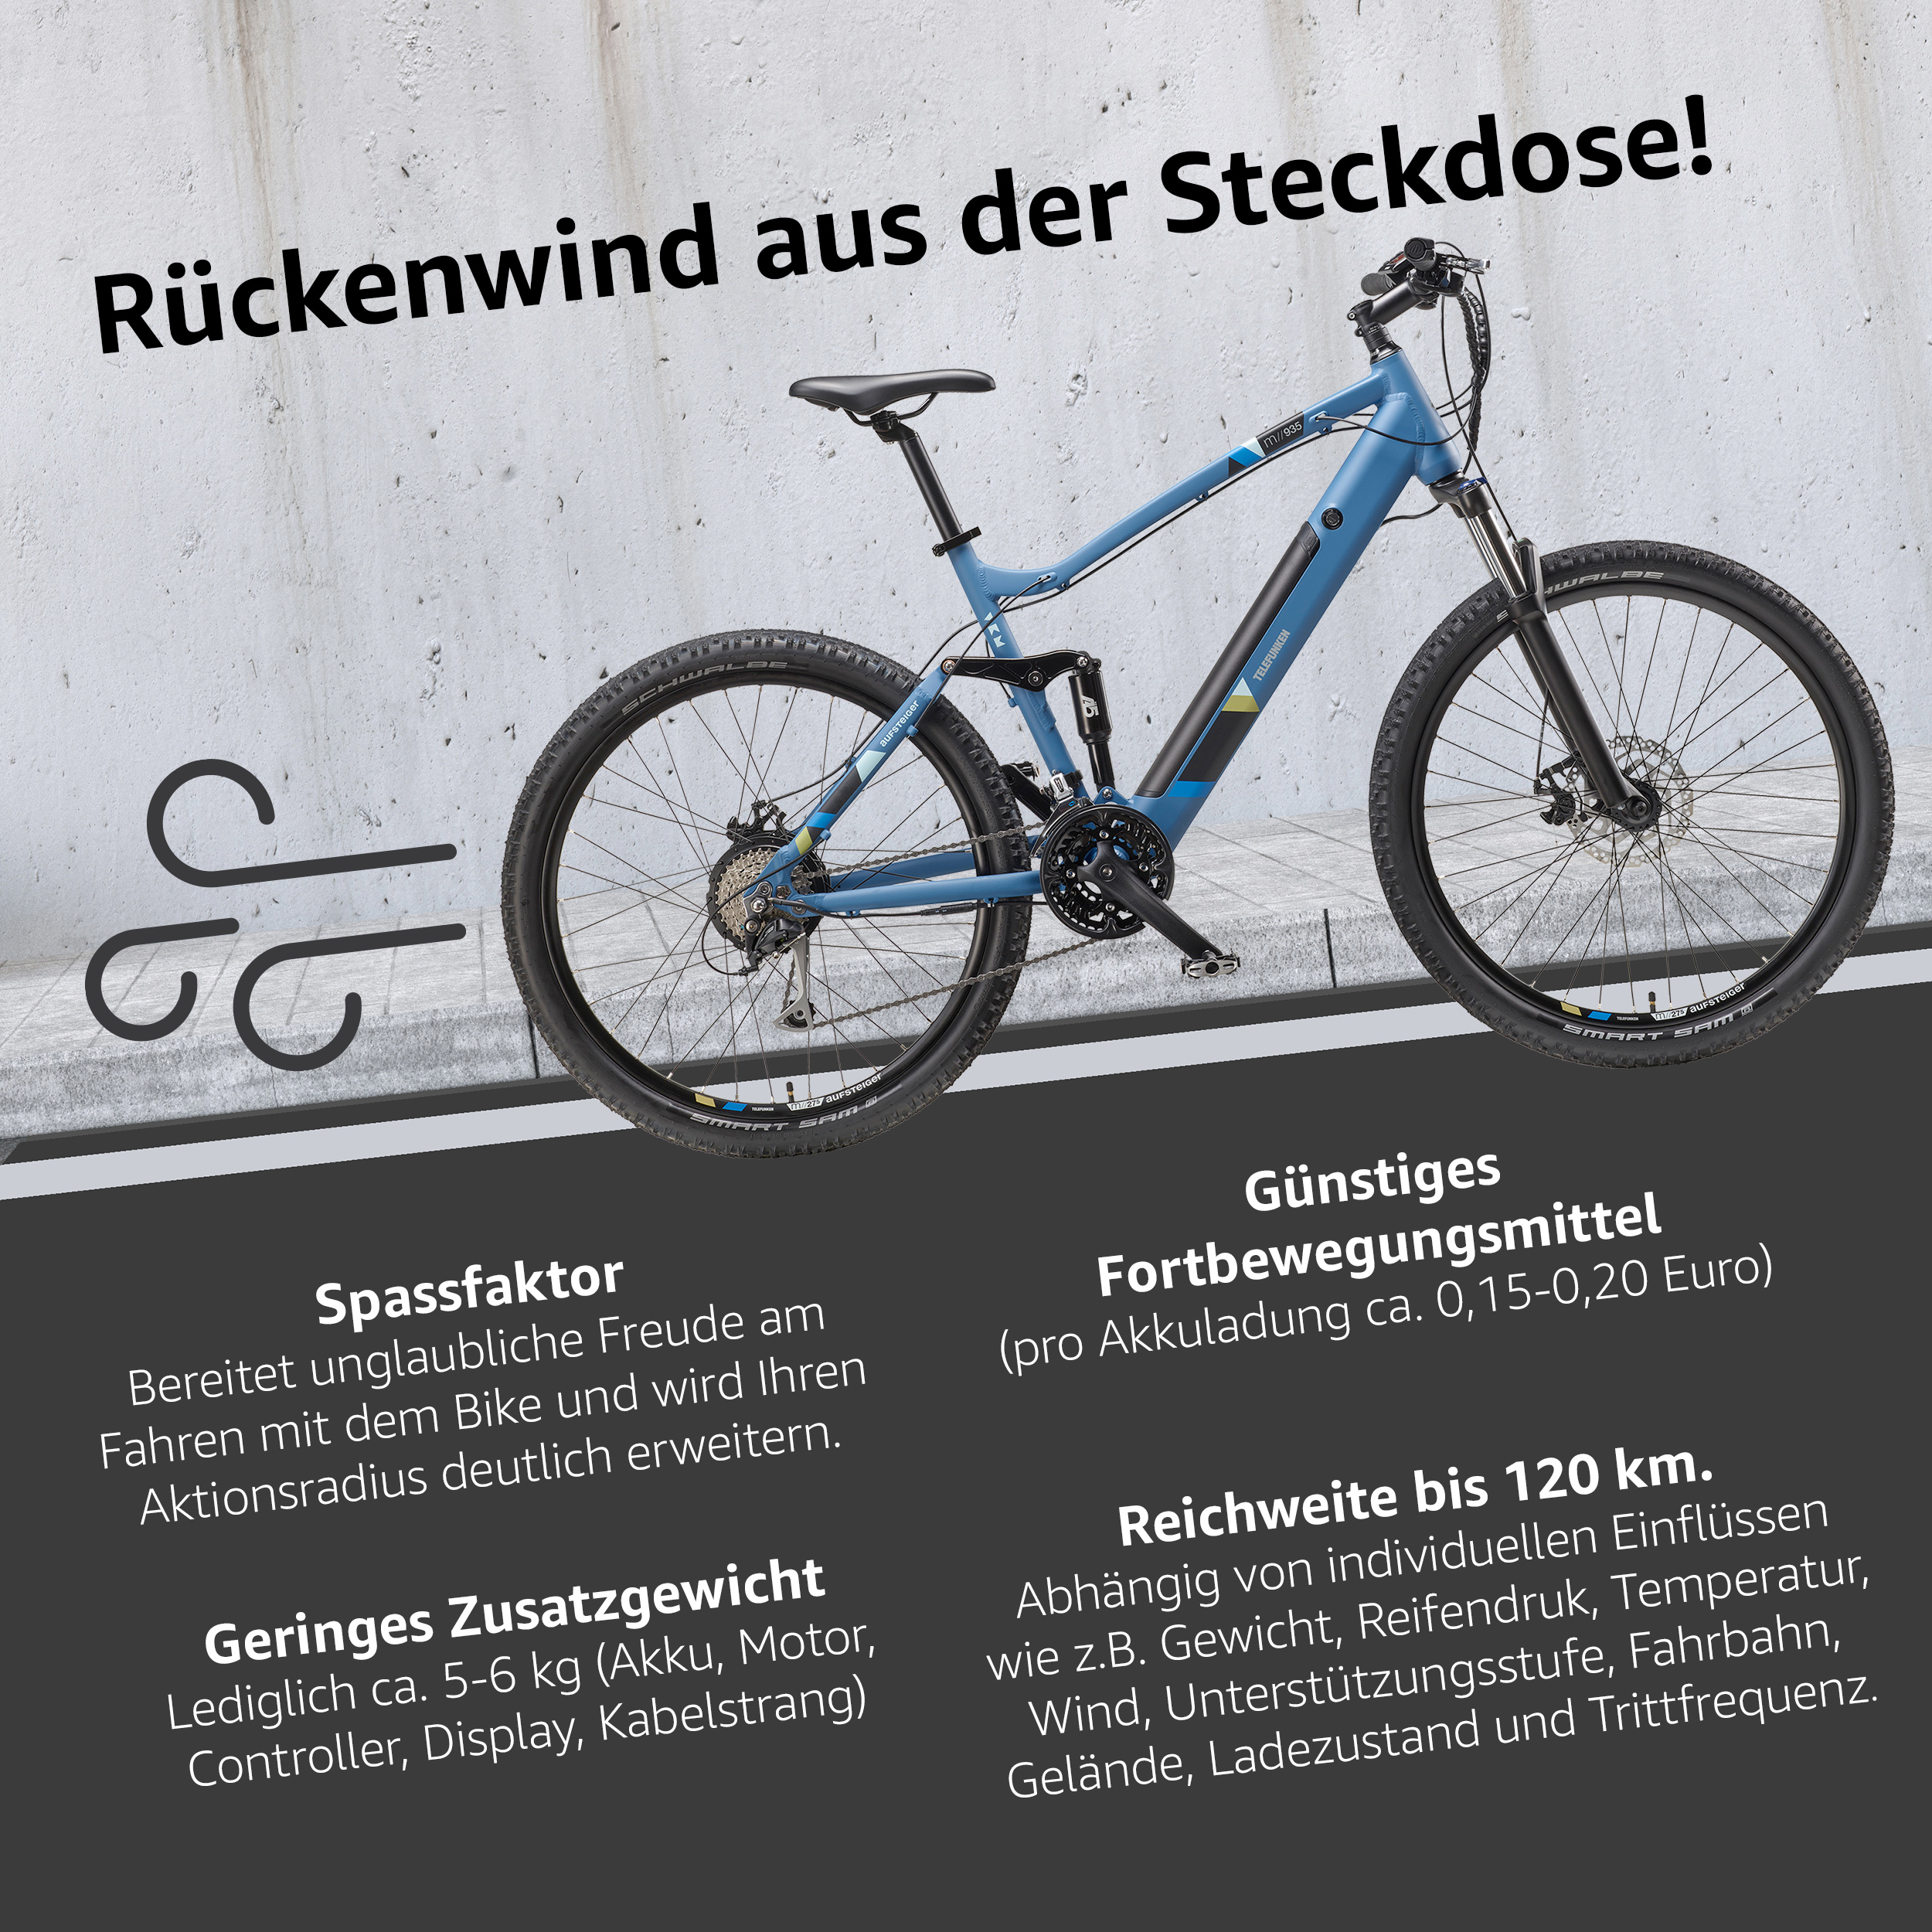 TELEFUNKEN Aufsteiger blau Blau) Herren-Rad, (Laufradgröße: 14, Mountainbike 27,5\